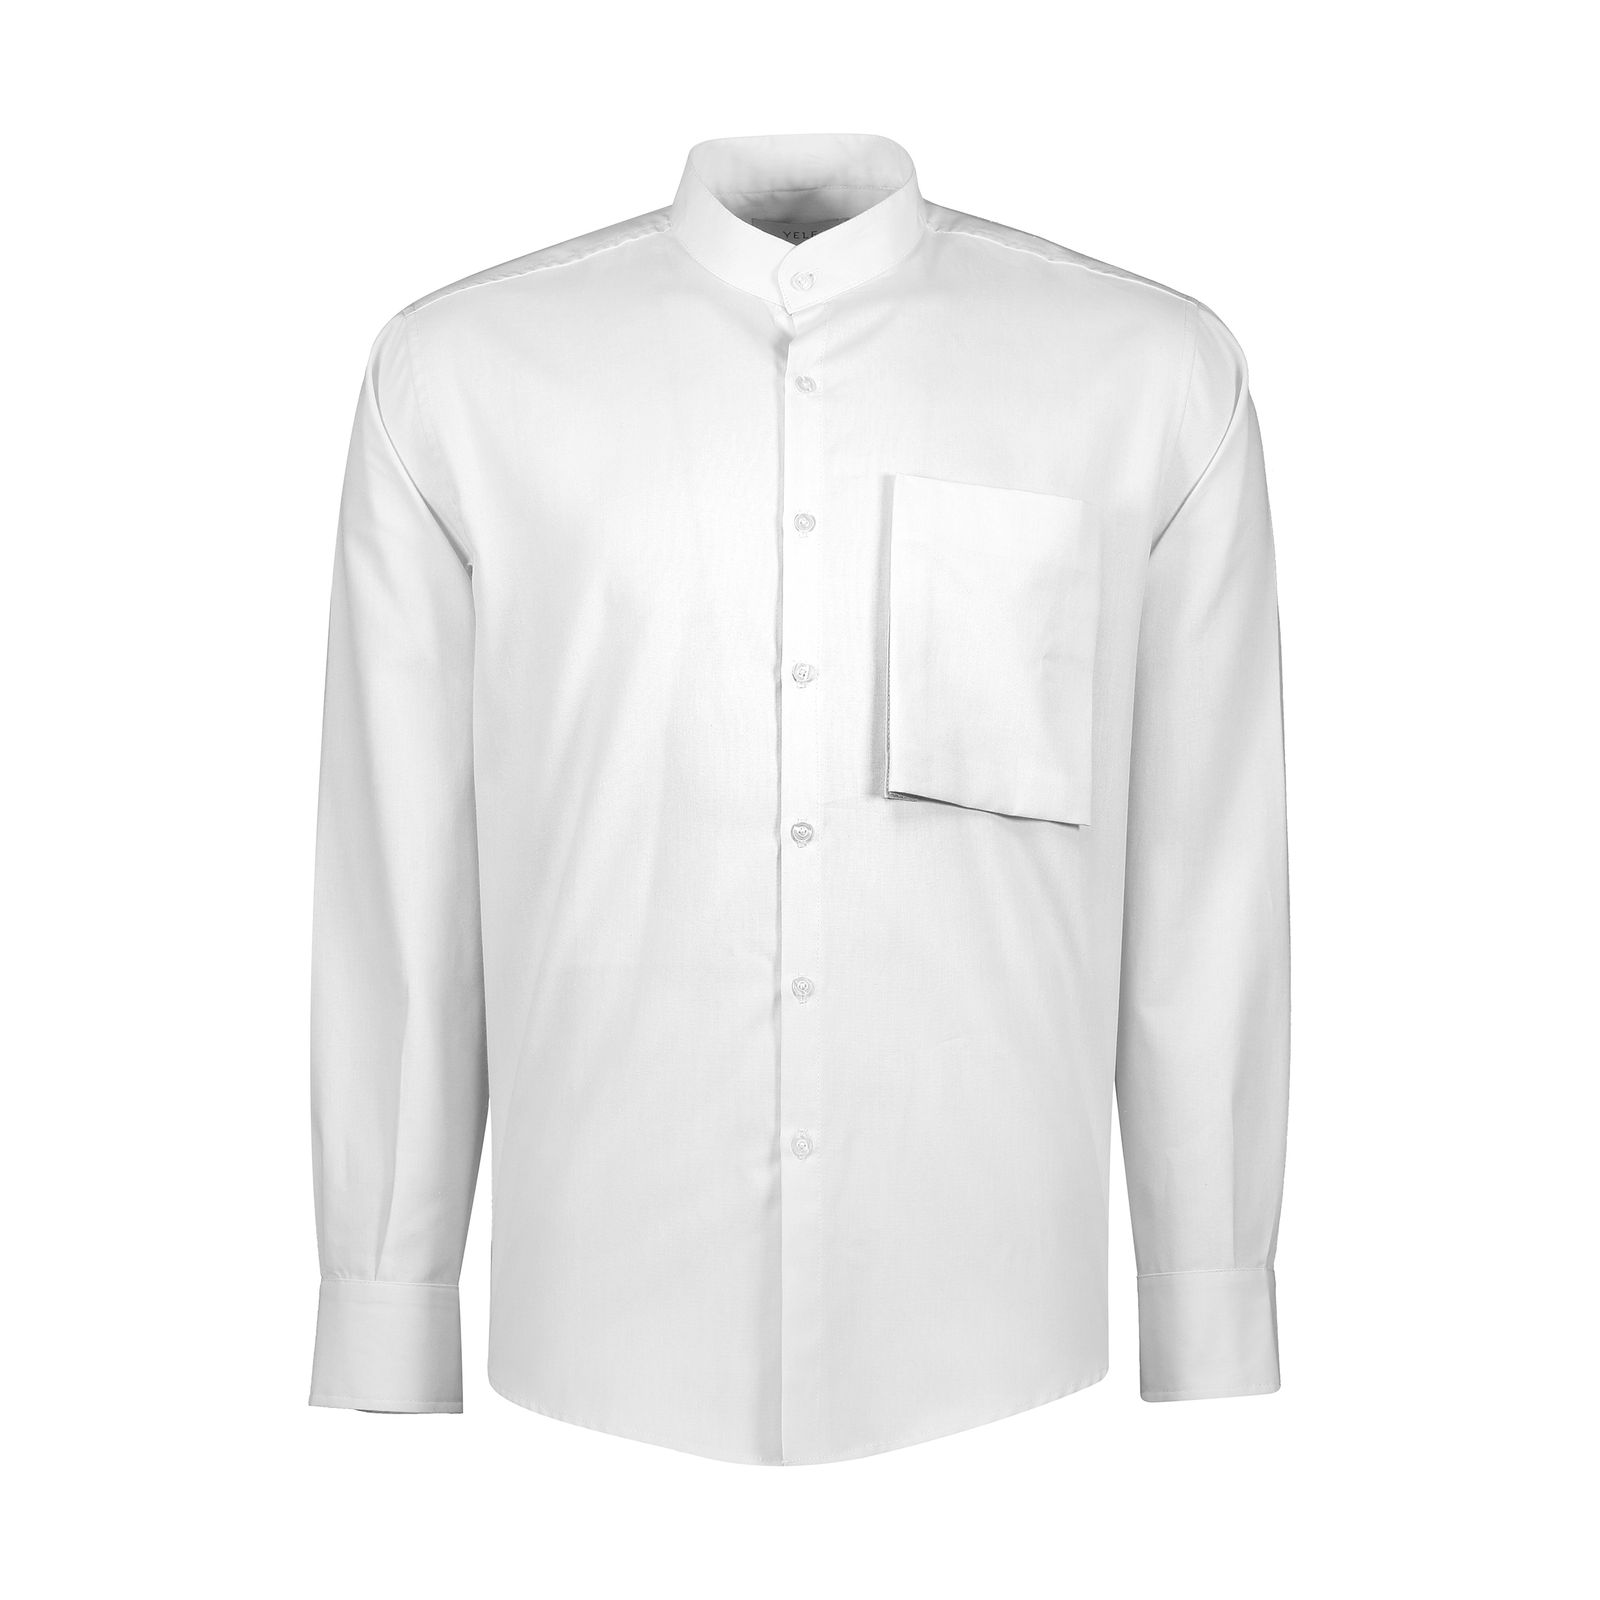 پیراهن آستین بلند مردانه یله مدل M4493000SH رنگ سفید -  - 1